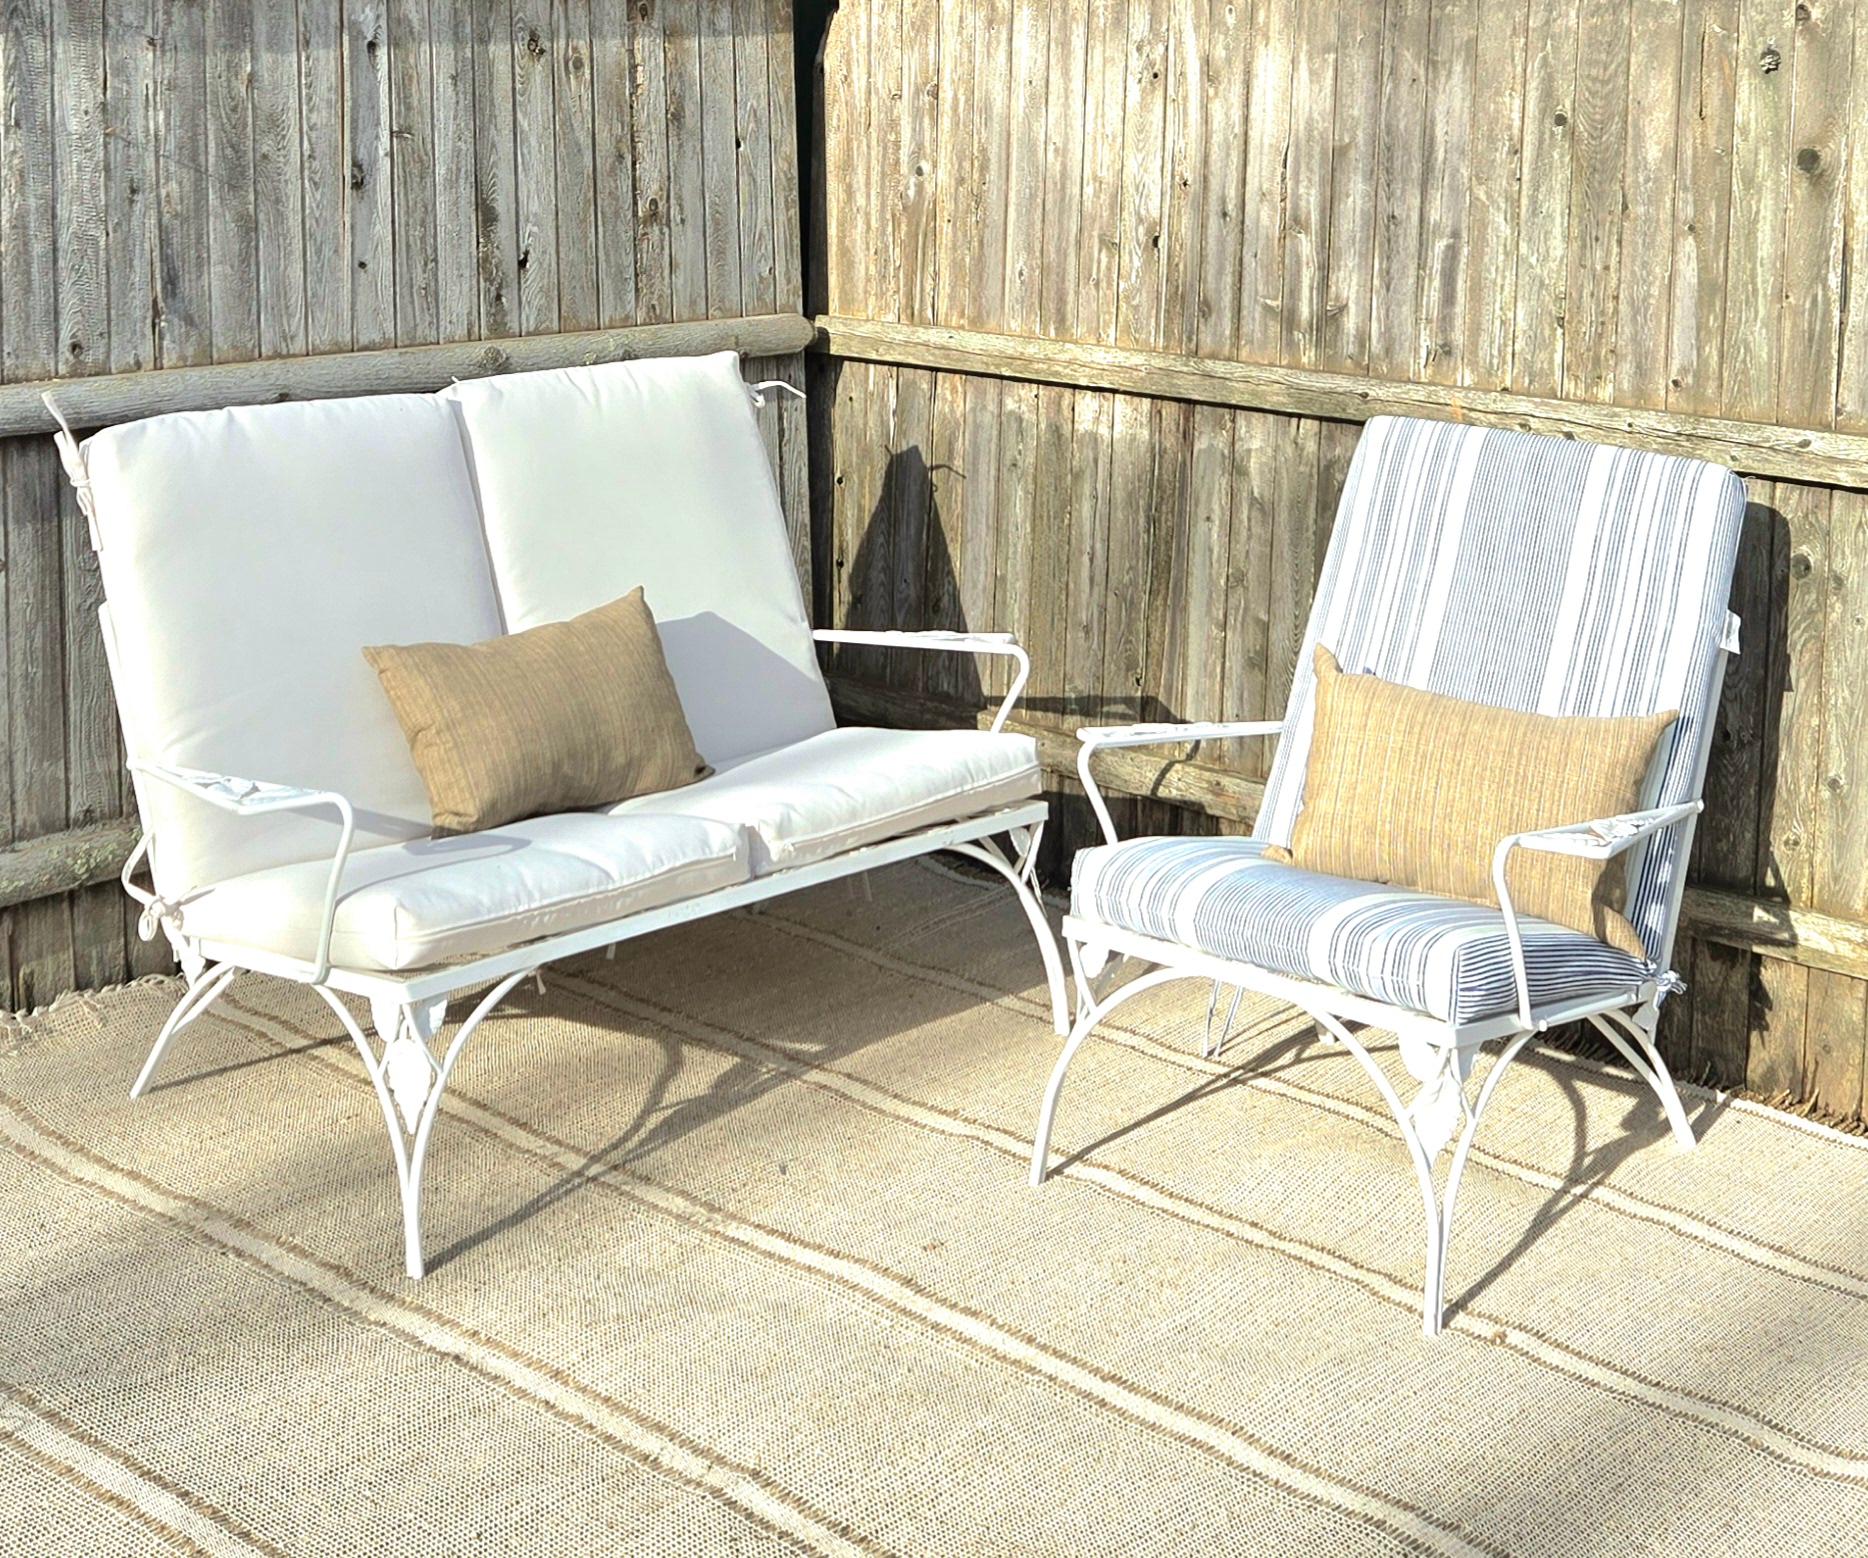 Dies ist ein schönes Set von Vintage-Terrassenmöbeln von Woodard, einer renommierten Marke für Gartenmöbel. Das Set besteht aus einem 2-Personen-Sofa und einem Sessel mit Seitenarm und Blattmotiv. Eine ausgezeichnete Wahl für jede Terrasse, jeden